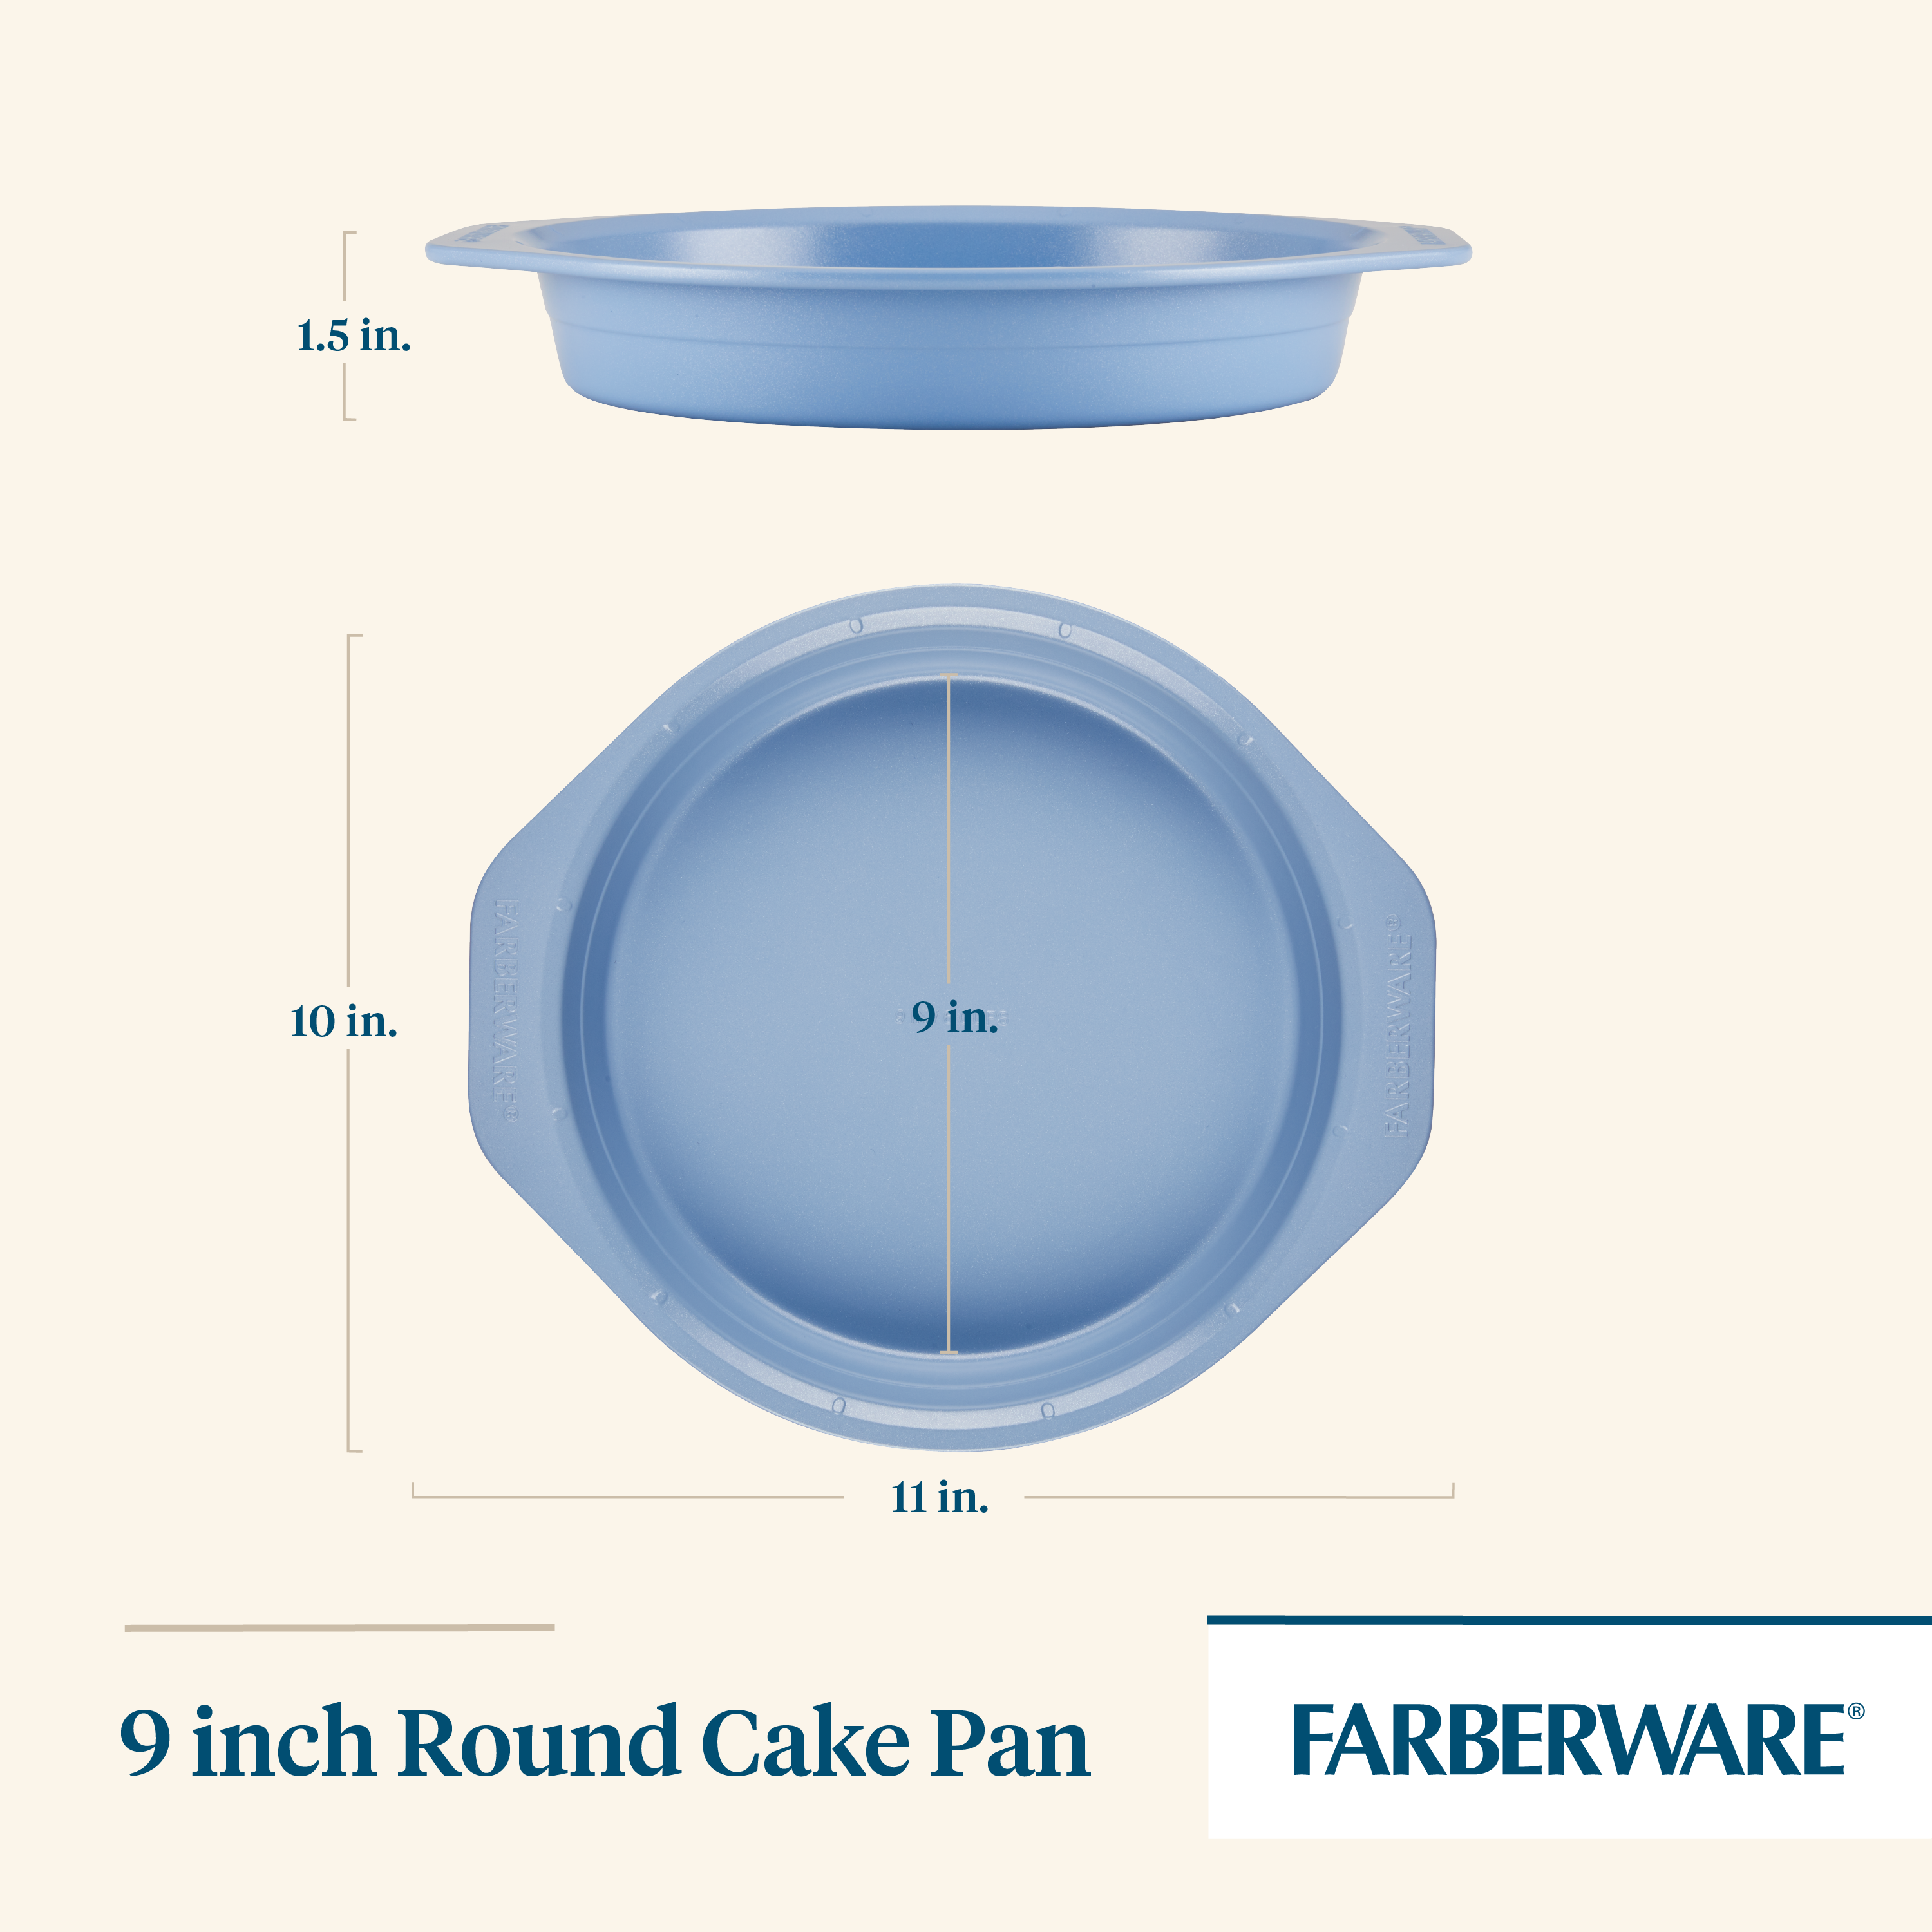 USA Pan Nonstick Round Cake Pan Set of 3, Large